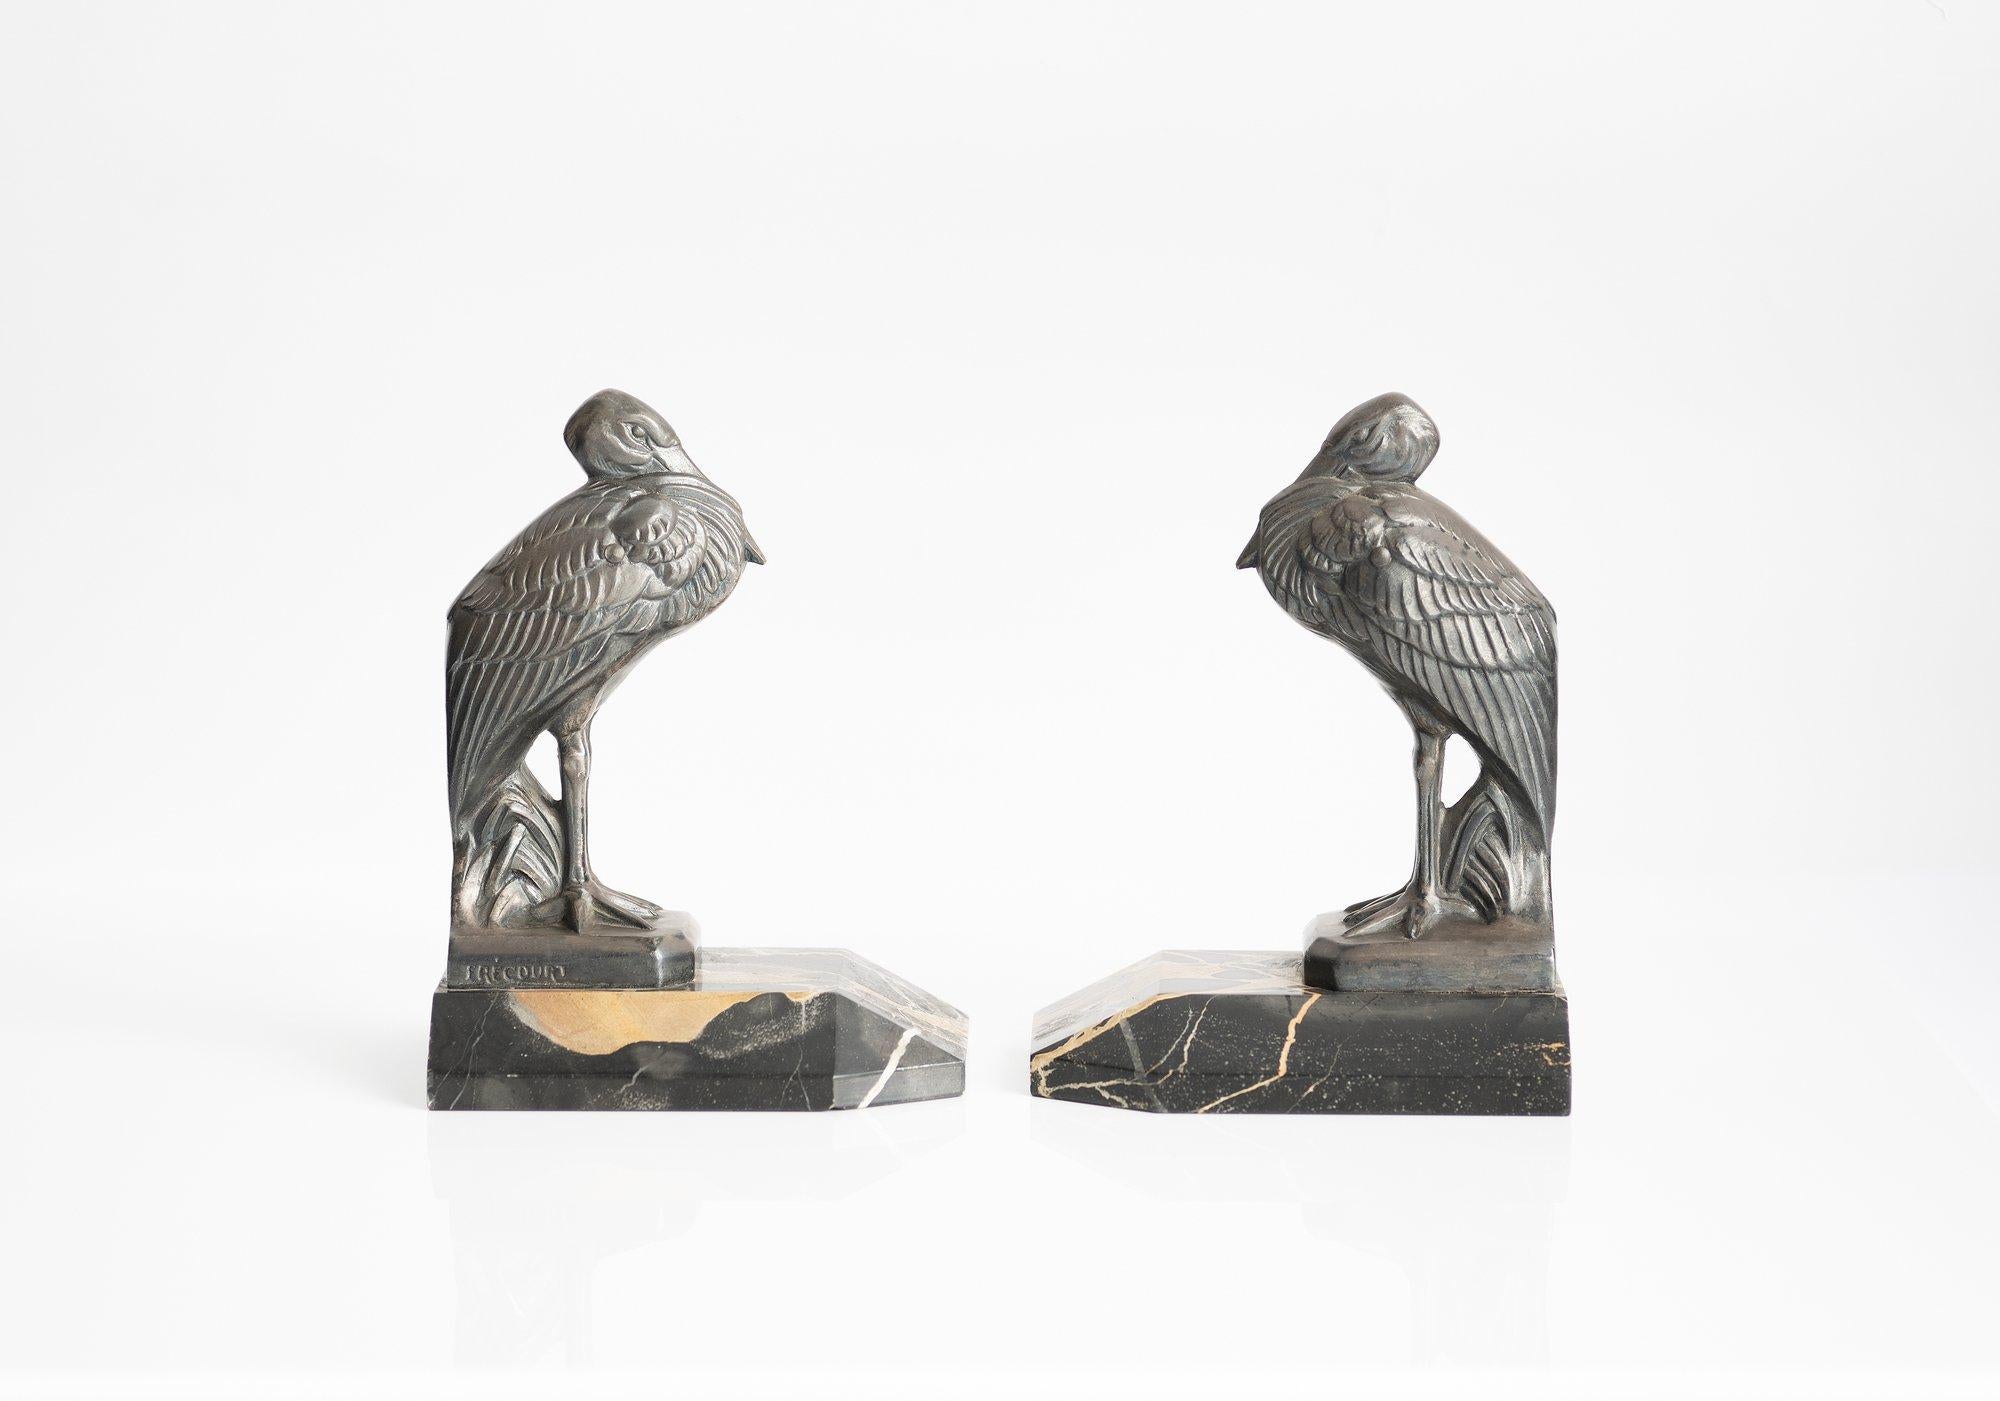 Très belle et rare paire de serre-livres en étain représentant des hérons réalisés par l'artiste Maurice Frécourt (1890-1961). Exécuté au milieu de la période art déco, vers 1930. Ces deux pièces sont signées par l'artiste. Le port altier de ces